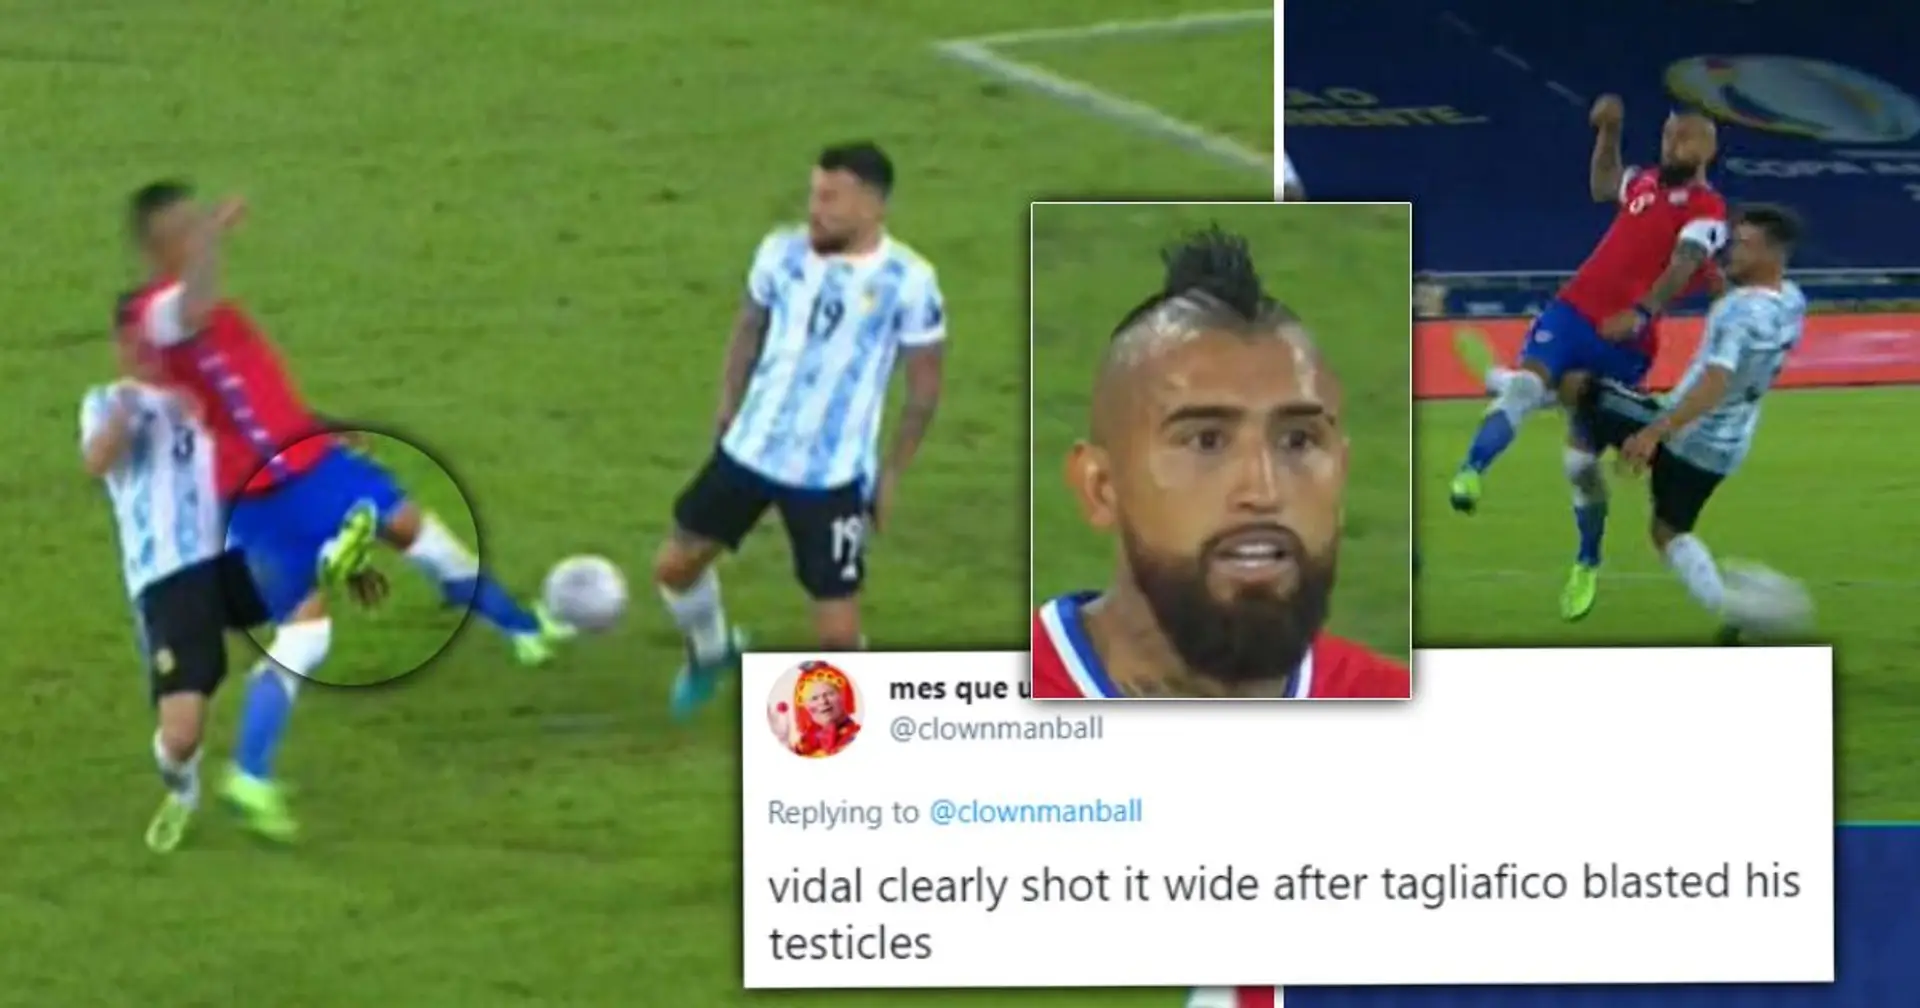 "Versucht sein Bestes, um Vidal in einen Eunuchen zu verwandeln": Chile holt umstrittenen Elfer raus, nachdem das Bein in die Hoden tritt